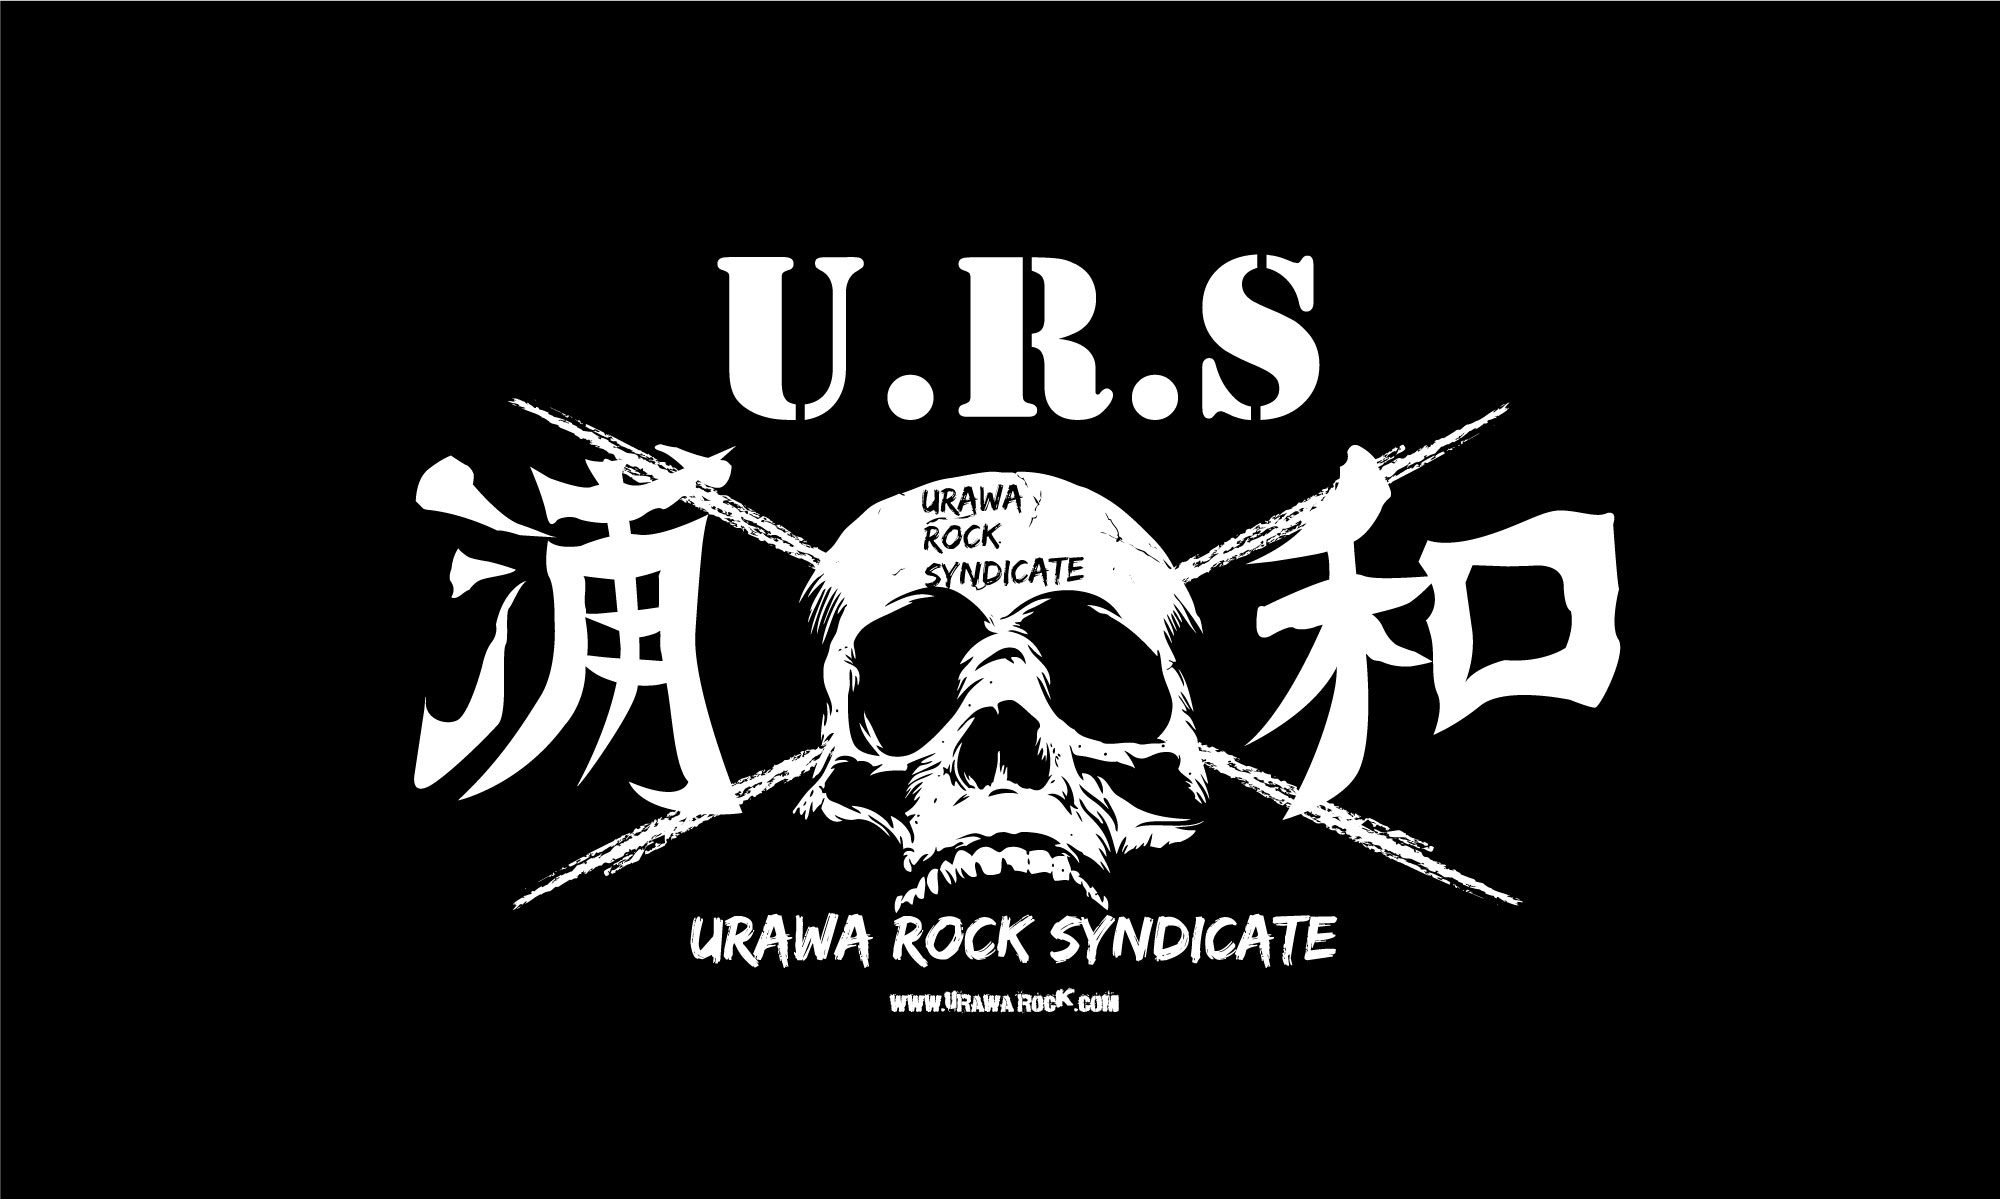 URAWA ROCK SYNDICATE